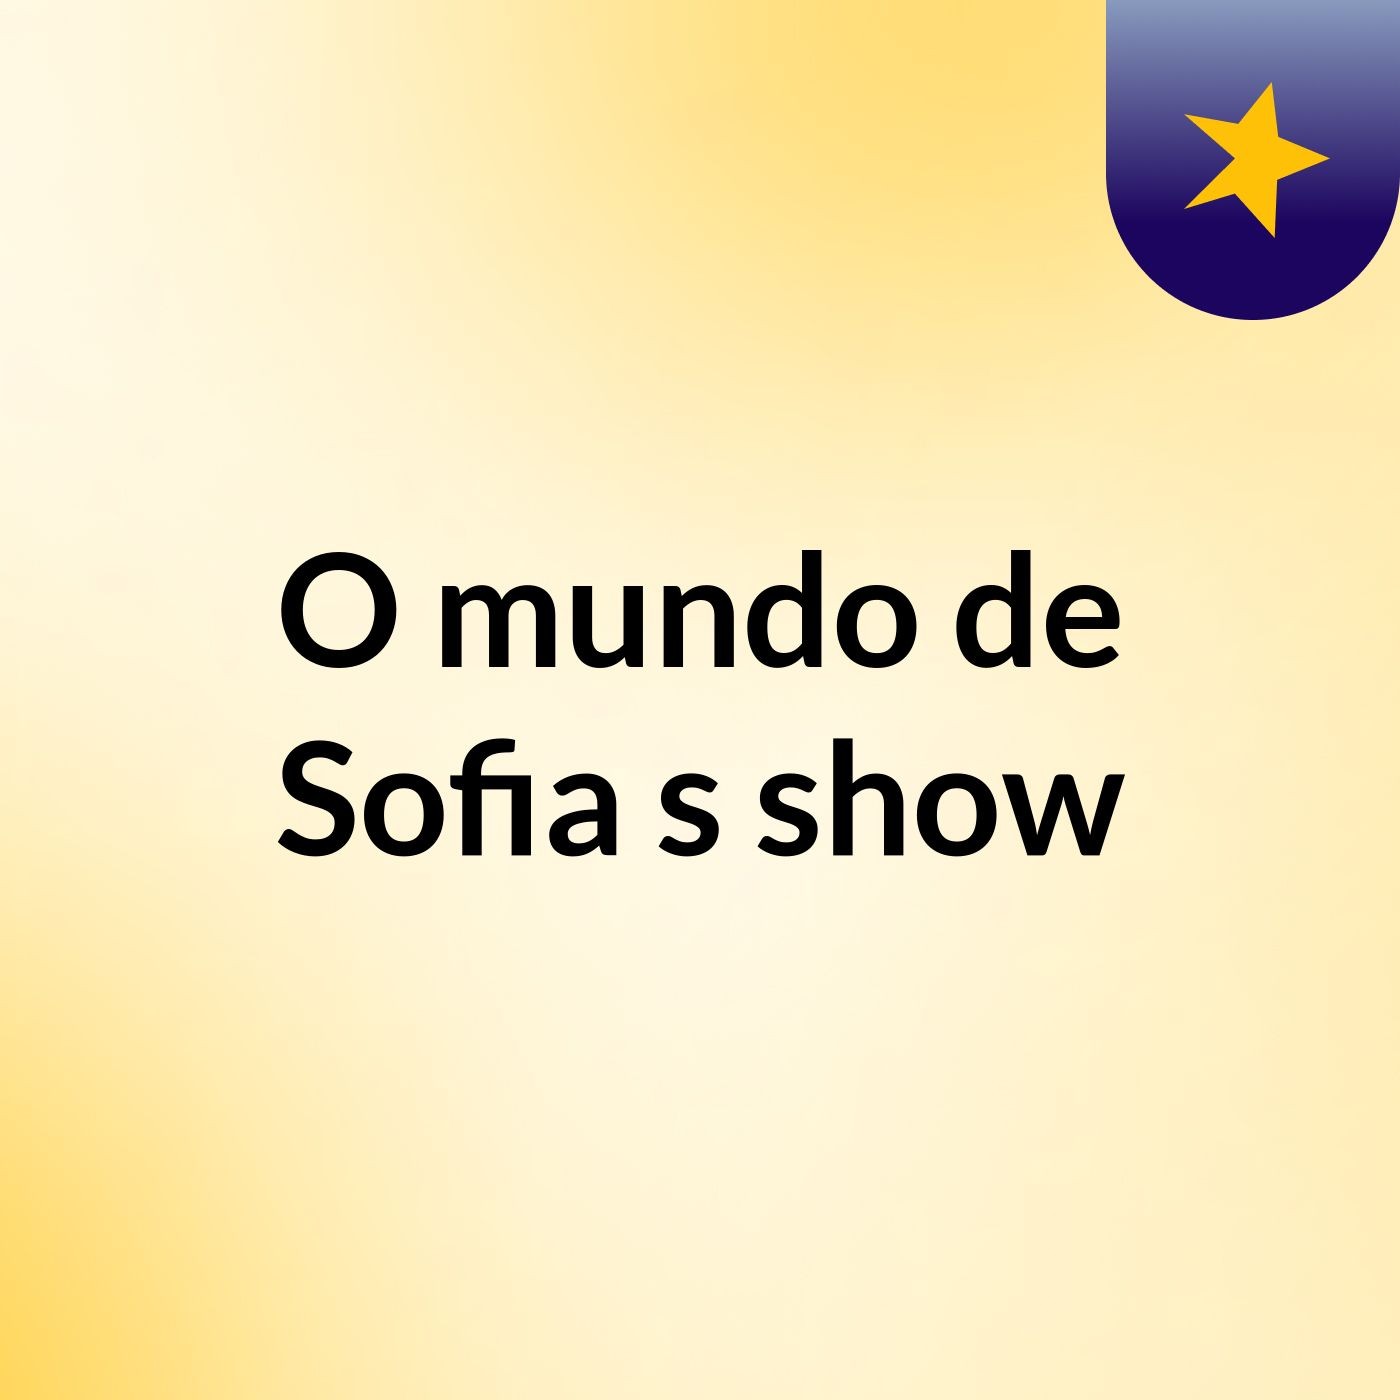 O mundo de Sofia's show